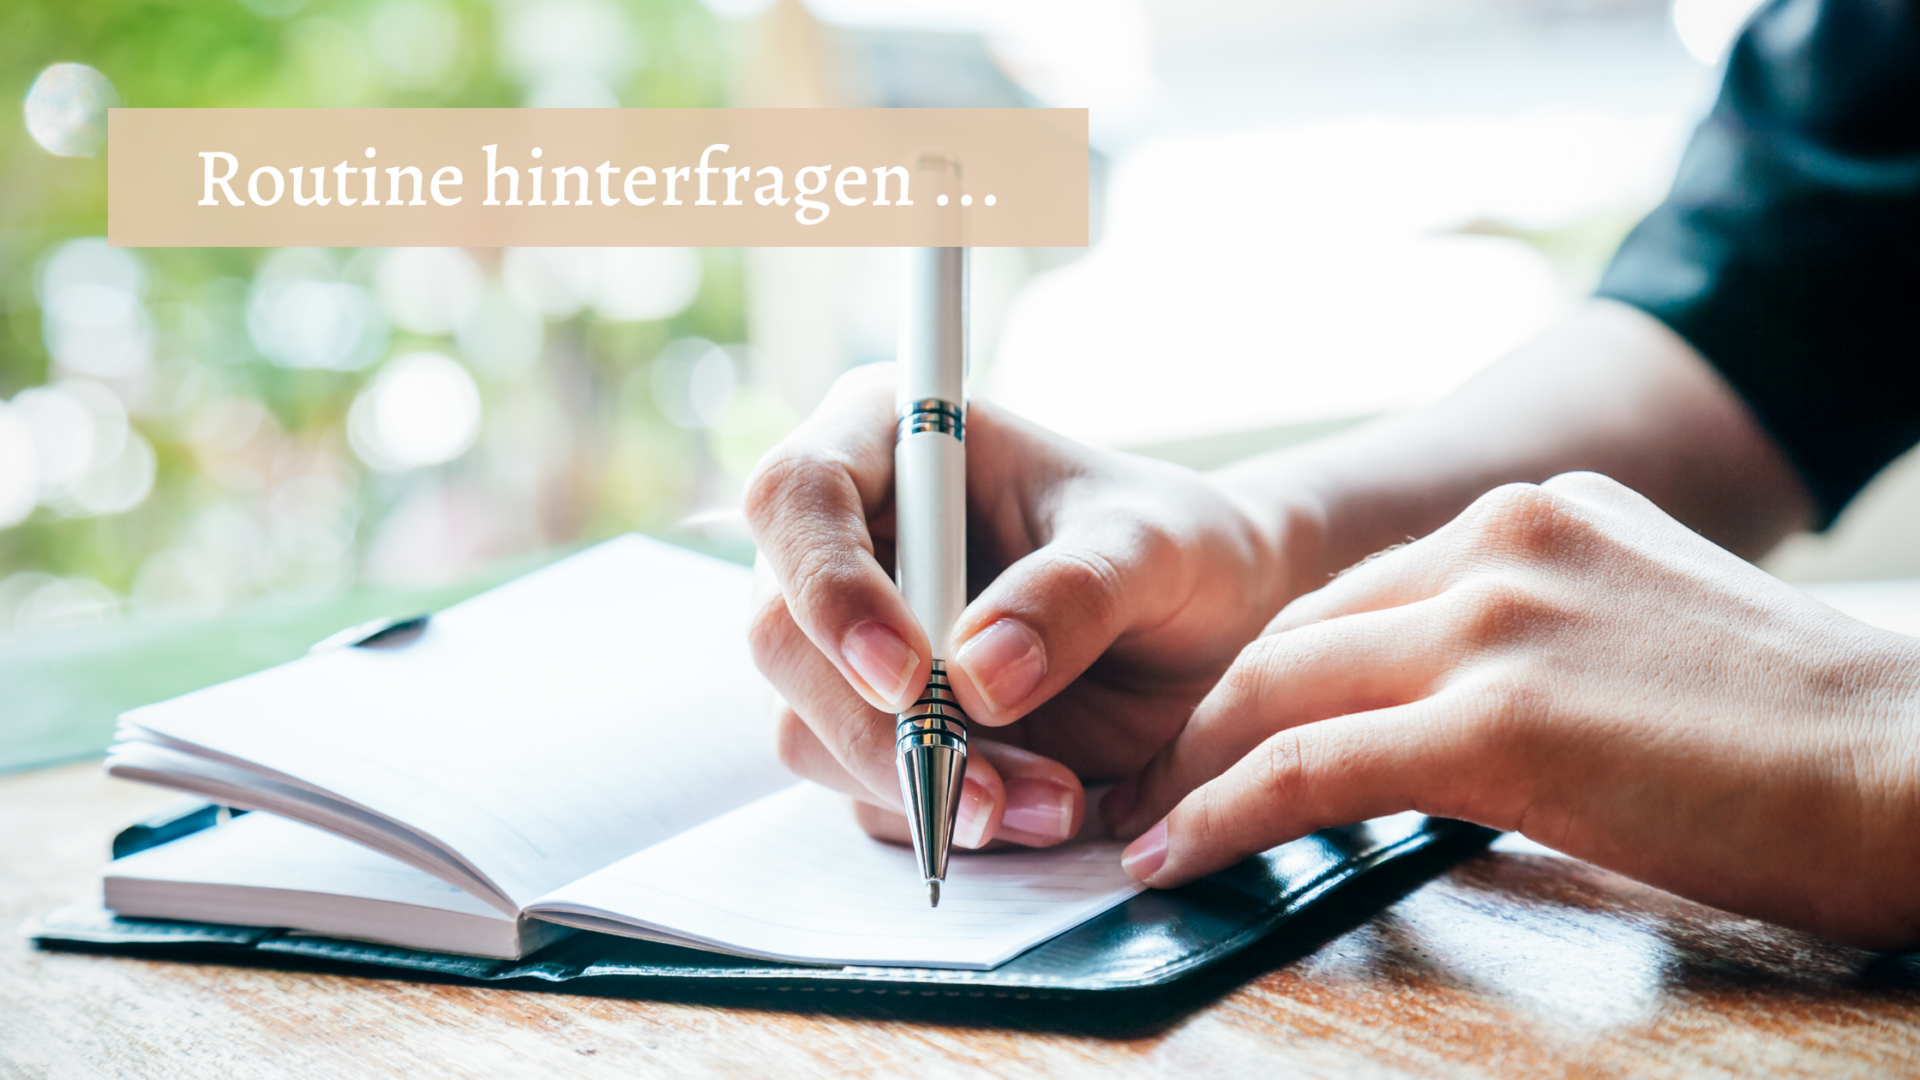 Führe ein Schreibjournal. Foto von einer Person, die mit einem Stift etwas in ein Notizbuch einträgt.